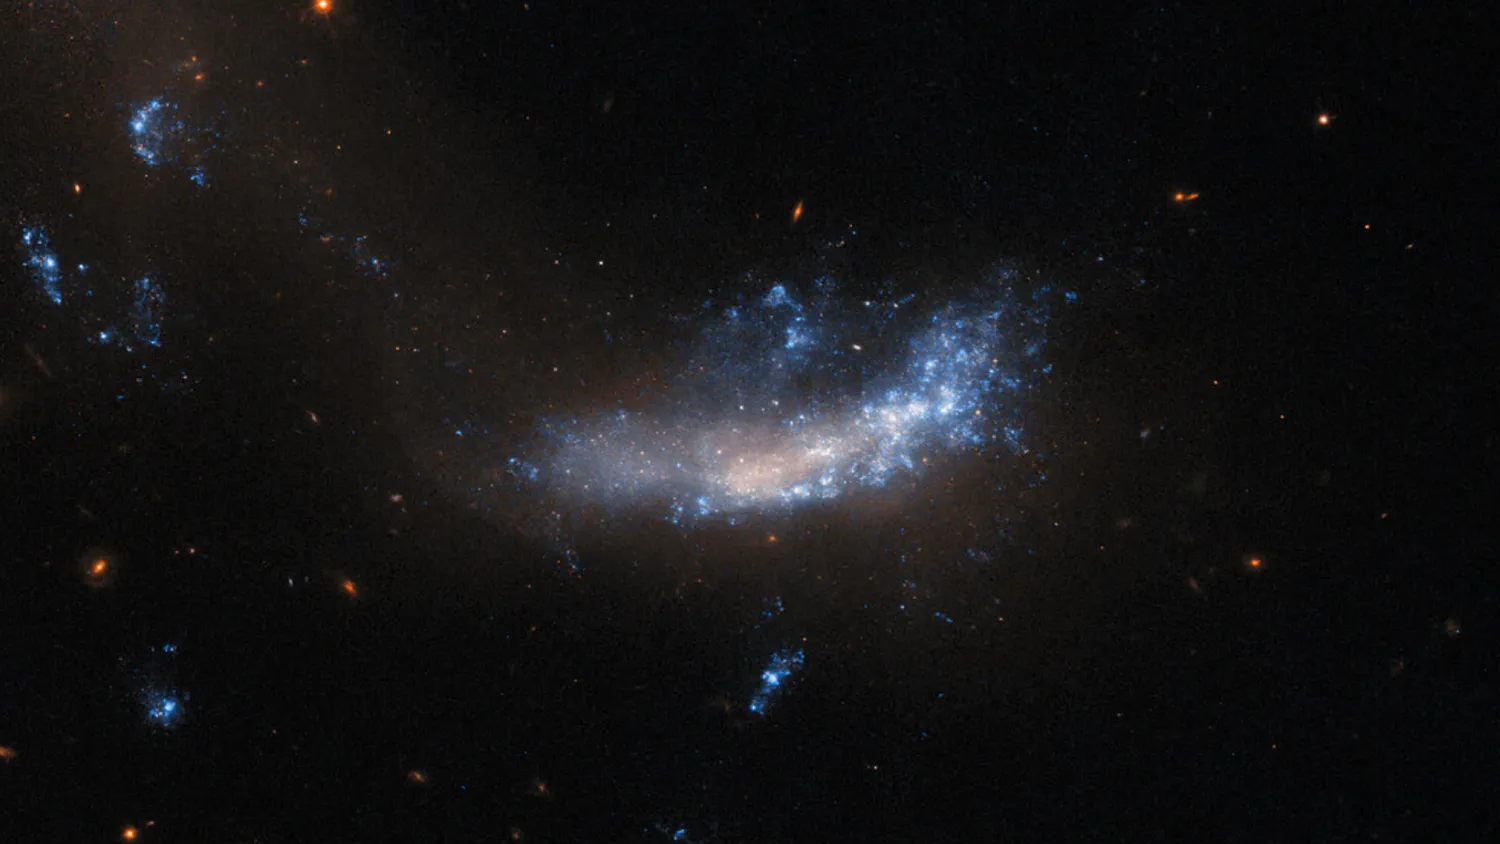 Eine Galaxie, die flach und unförmig ist. Oben und auf der rechten Seite ist sie von leuchtenden Gas- und Staubfahnen bedeckt, während ihr Zentrum und ihre linke Seite eher trübe und fleckig sind. Eine Spur aus dunklem, trübem Staub zieht sich von unterhalb der Galaxie nach oben und nach links, wo sich drei weitere helle Flecken befinden. Der Hintergrund um die Galaxie ist recht dunkel, nur ein paar kleine Hintergrundgalaxien und ein Stern sind zu sehen